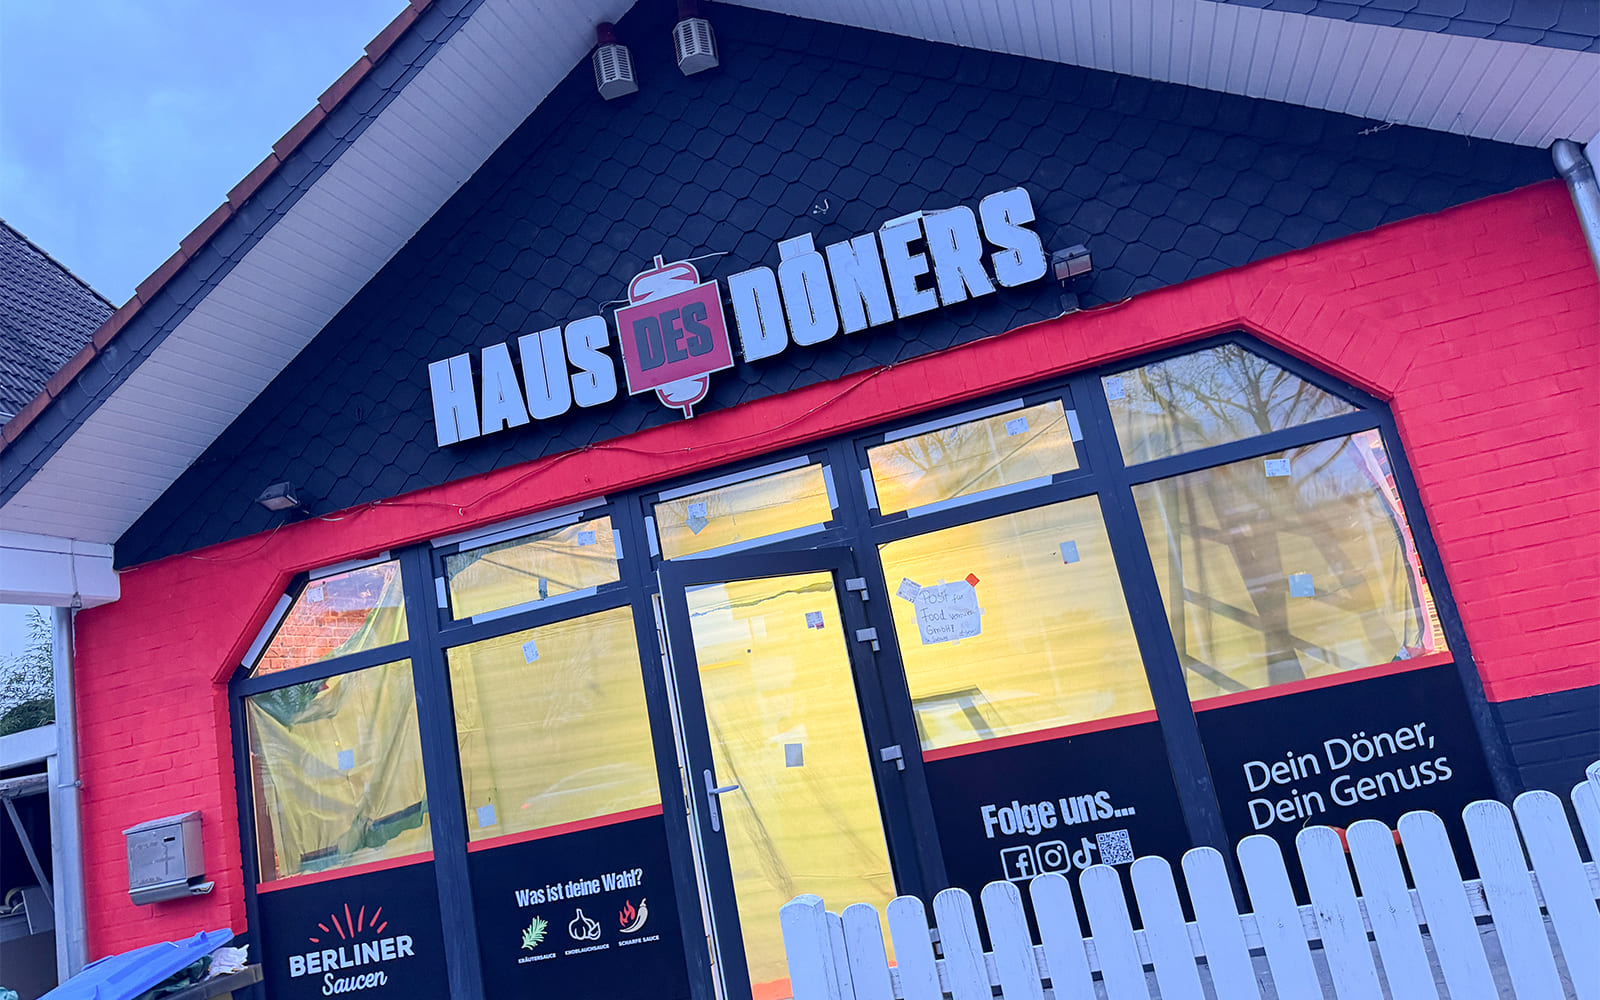 Außenansicht der fast fertigen "Haus des Döners"-Filiale in Hückelhoven mit markantem Logo und Werbeslogans auf den Fenstern, kurz vor der Eröffnung.